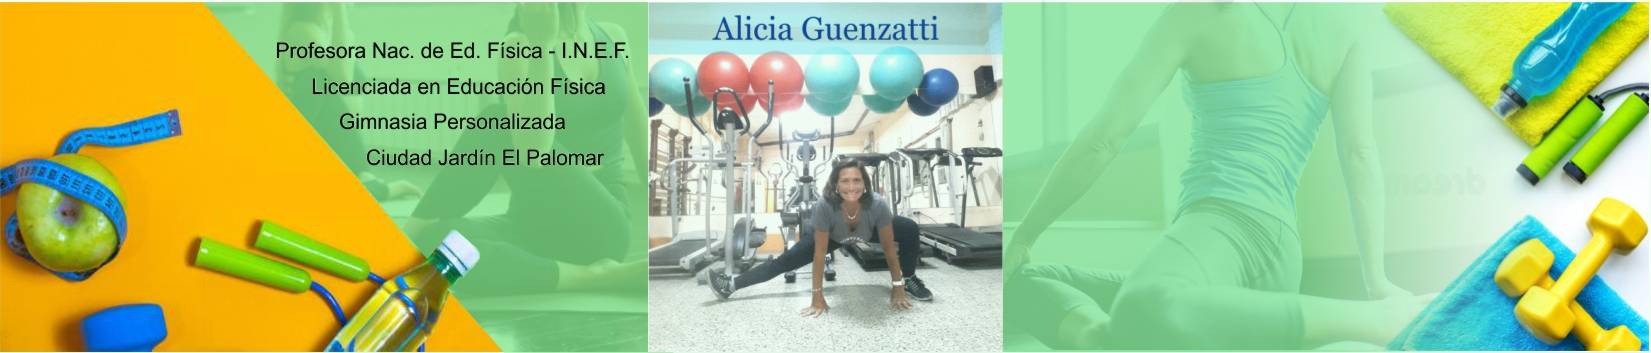 Lic Profesora Nacional de Educación Física Alicia Guenzatti